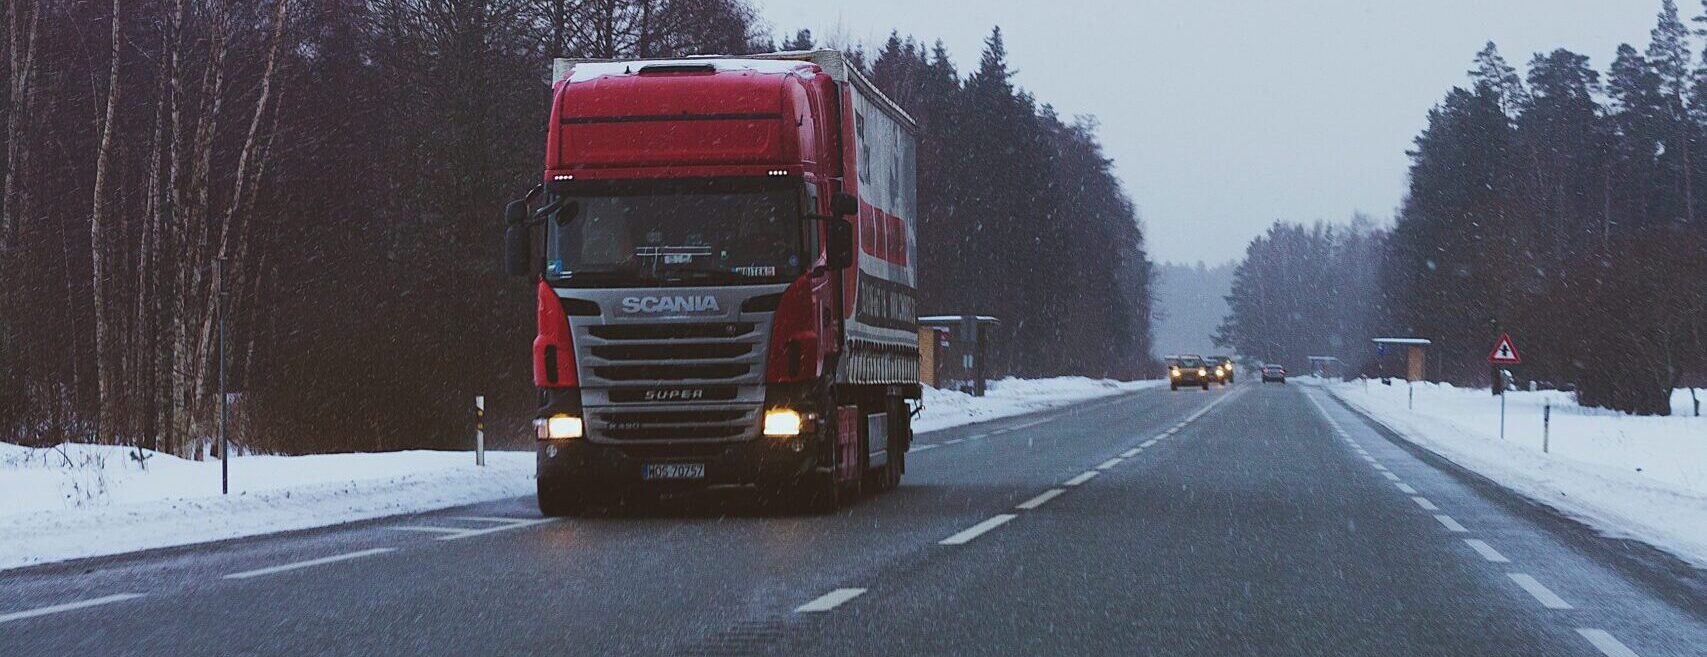 Bilden visar en lastbil som transporterar gods. ADR transport av farligt gods kräver specialkunskaper.